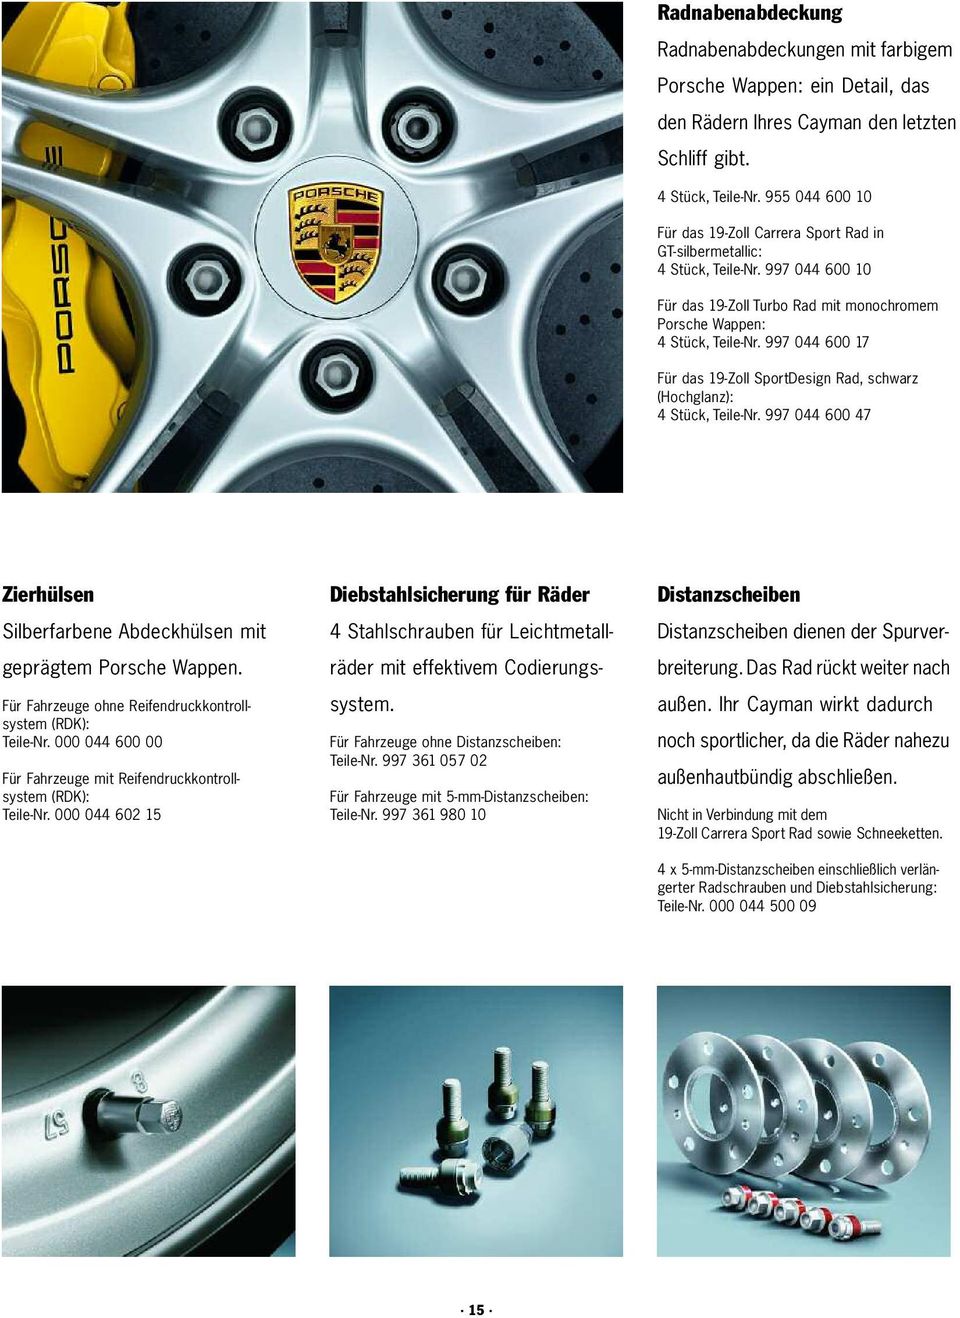 997 044 600 17 Für das 19-Zoll SportDesign Rad, schwarz (Hochglanz): 4 Stück, Teile-Nr. 997 044 600 47 Zierhülsen Silberfarbene Abdeckhülsen mit geprägtem Porsche Wappen.